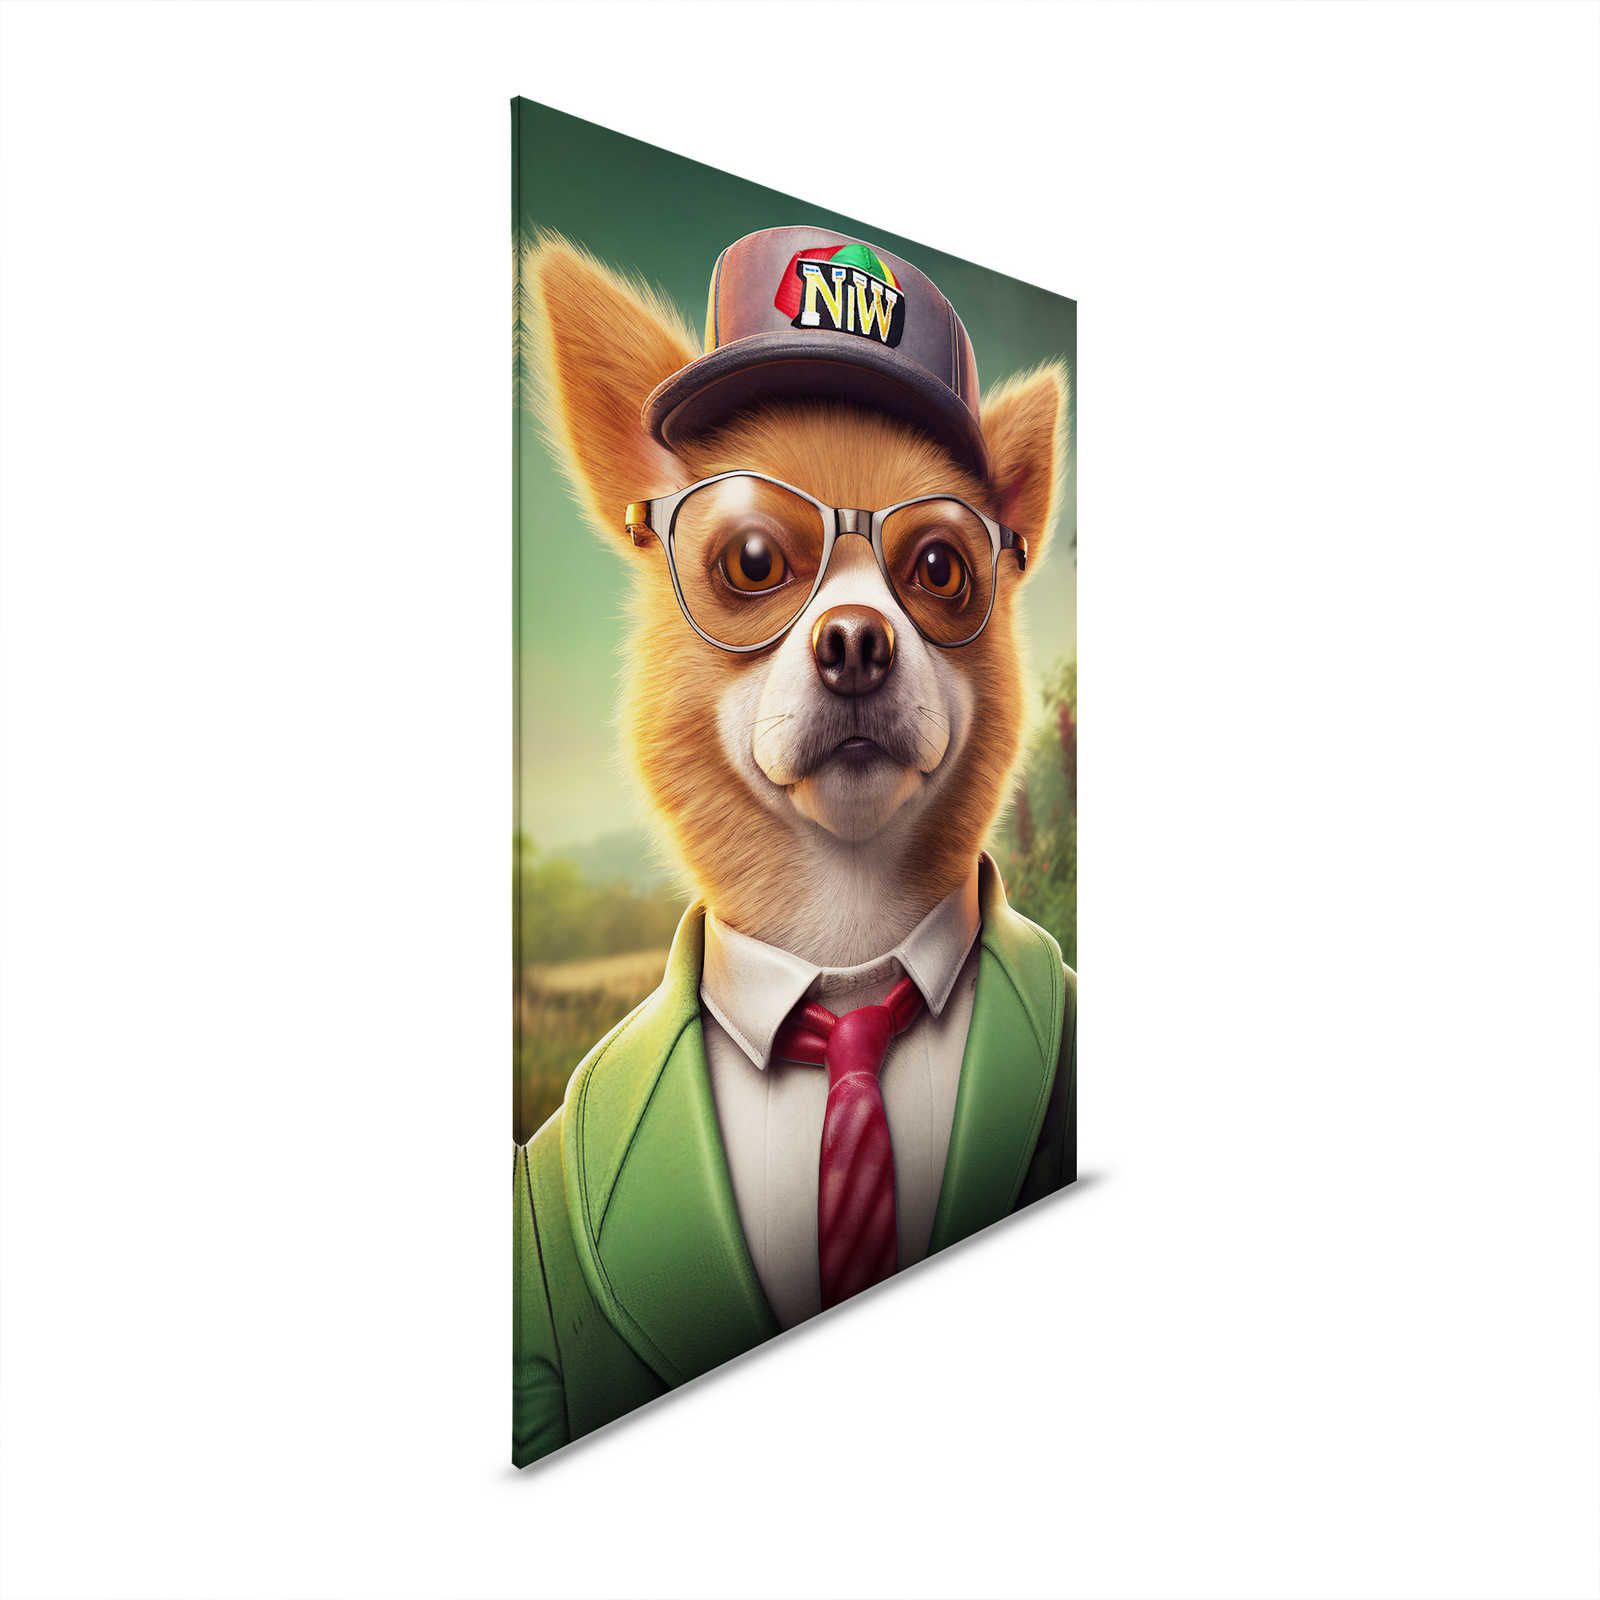 KI Canvas schilderij »Nerdy Dog« - 80 cm x 120 cm
